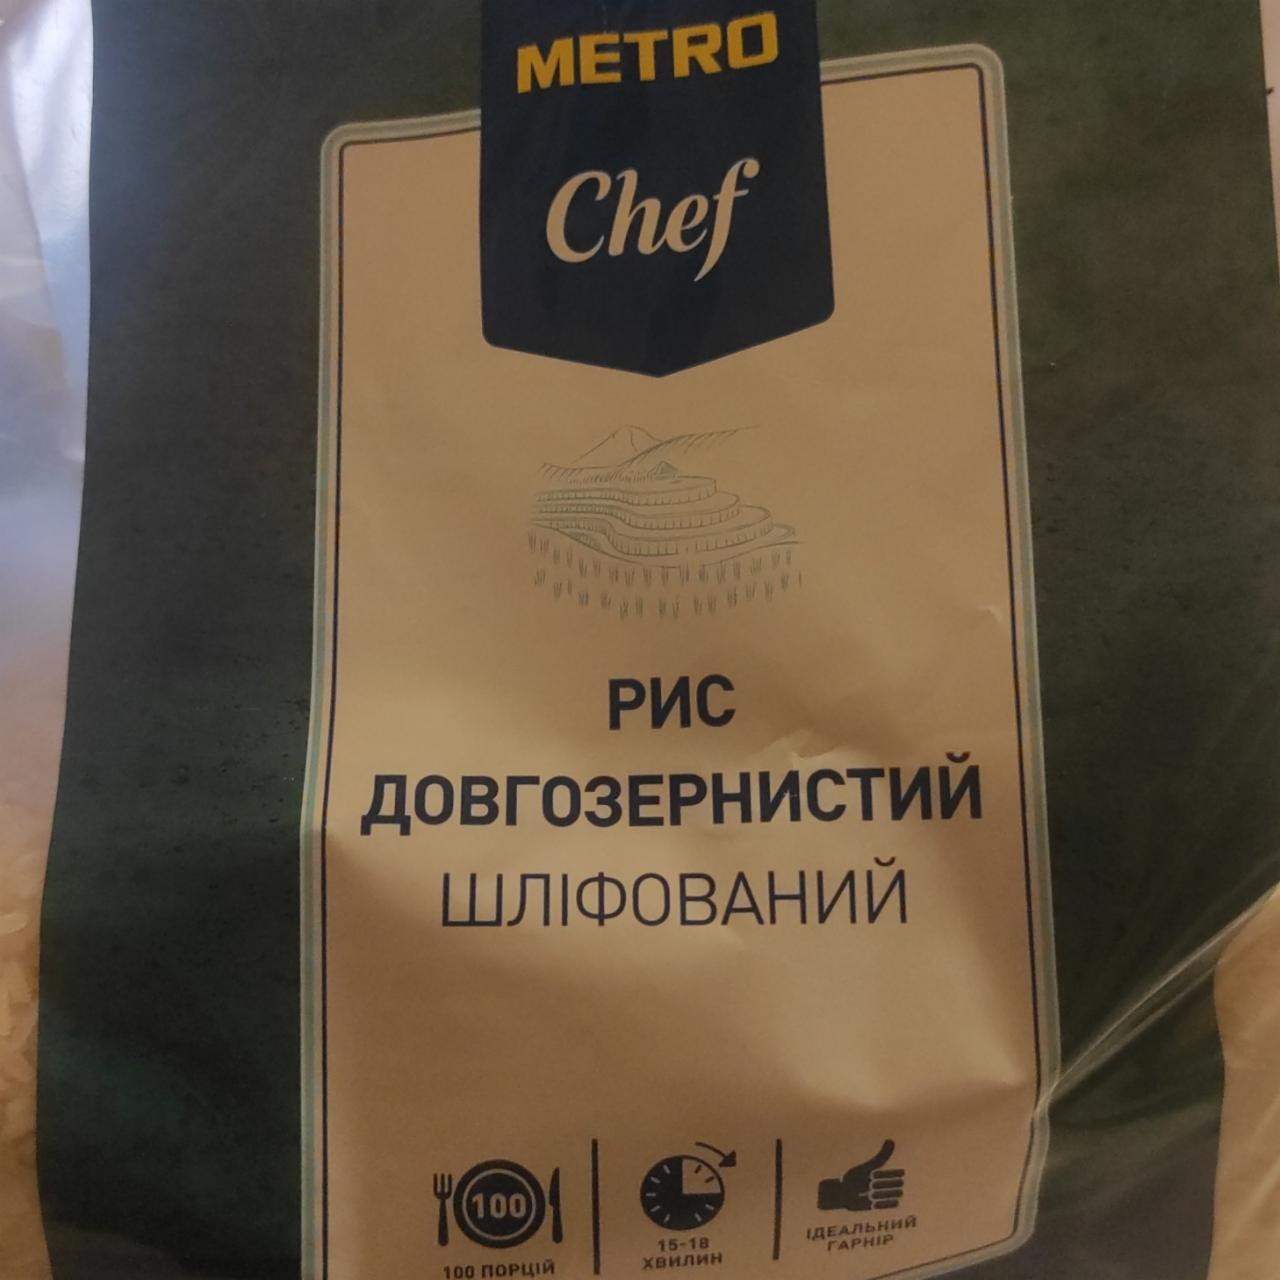 Фото - рис шлифованный долгозернистый metro chef